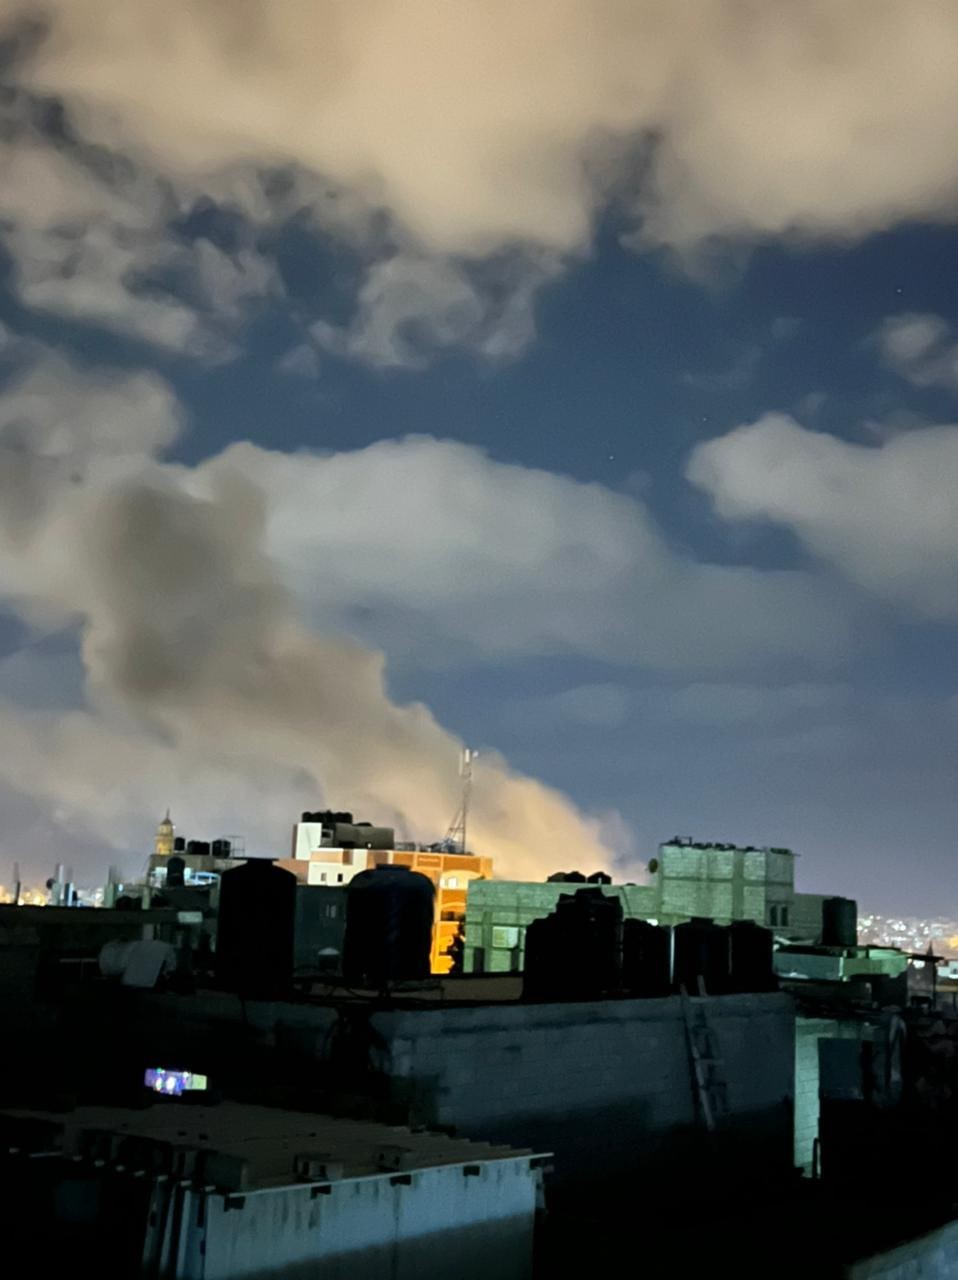 تصاعد الدخان من الموقع الذي استهدفت وسط قطاع غزة.jpg